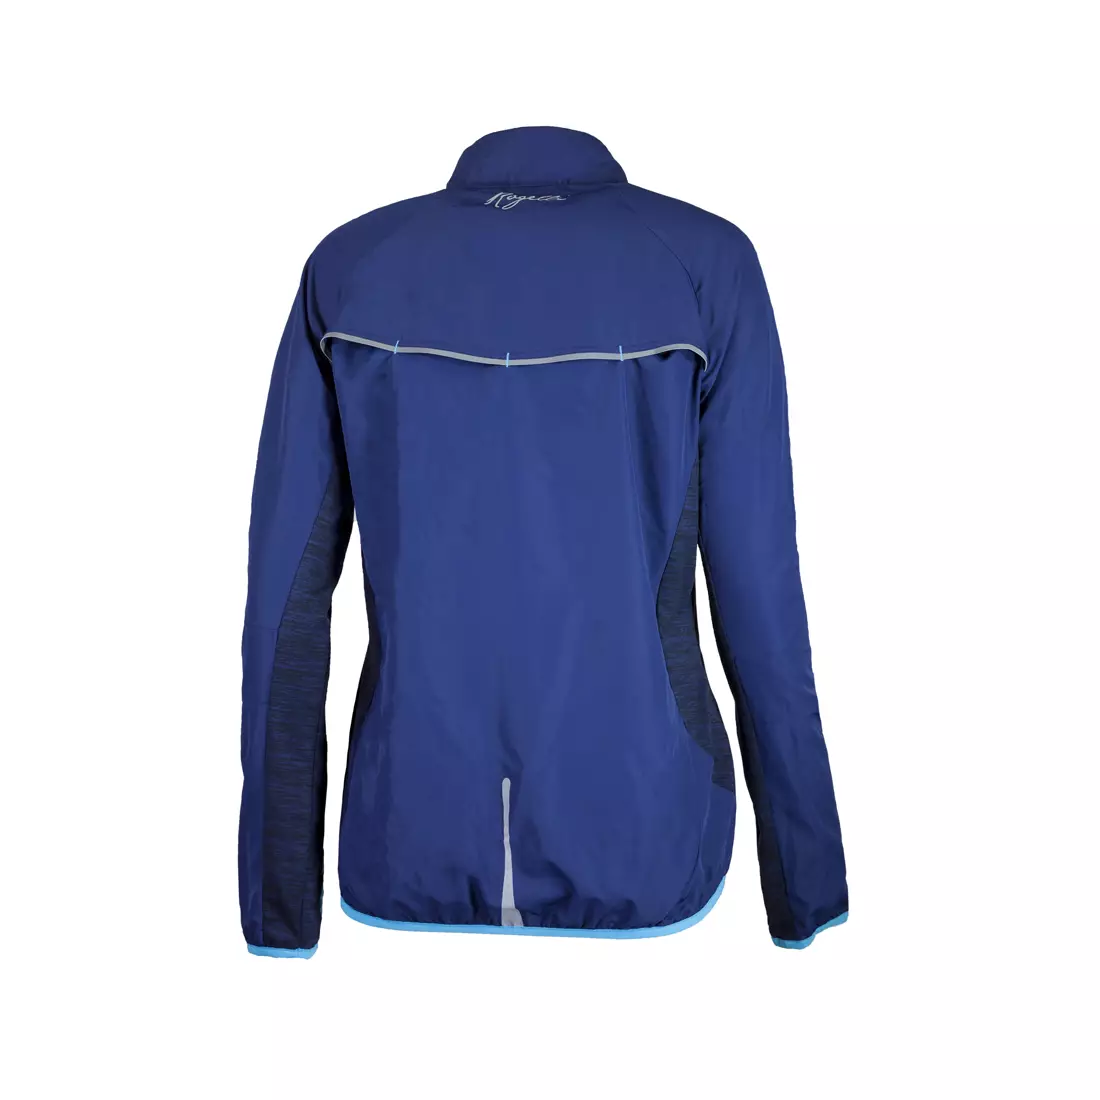 ROGELLI RUN BRIGHT 840.864 - dámská běžecká bunda, modrá